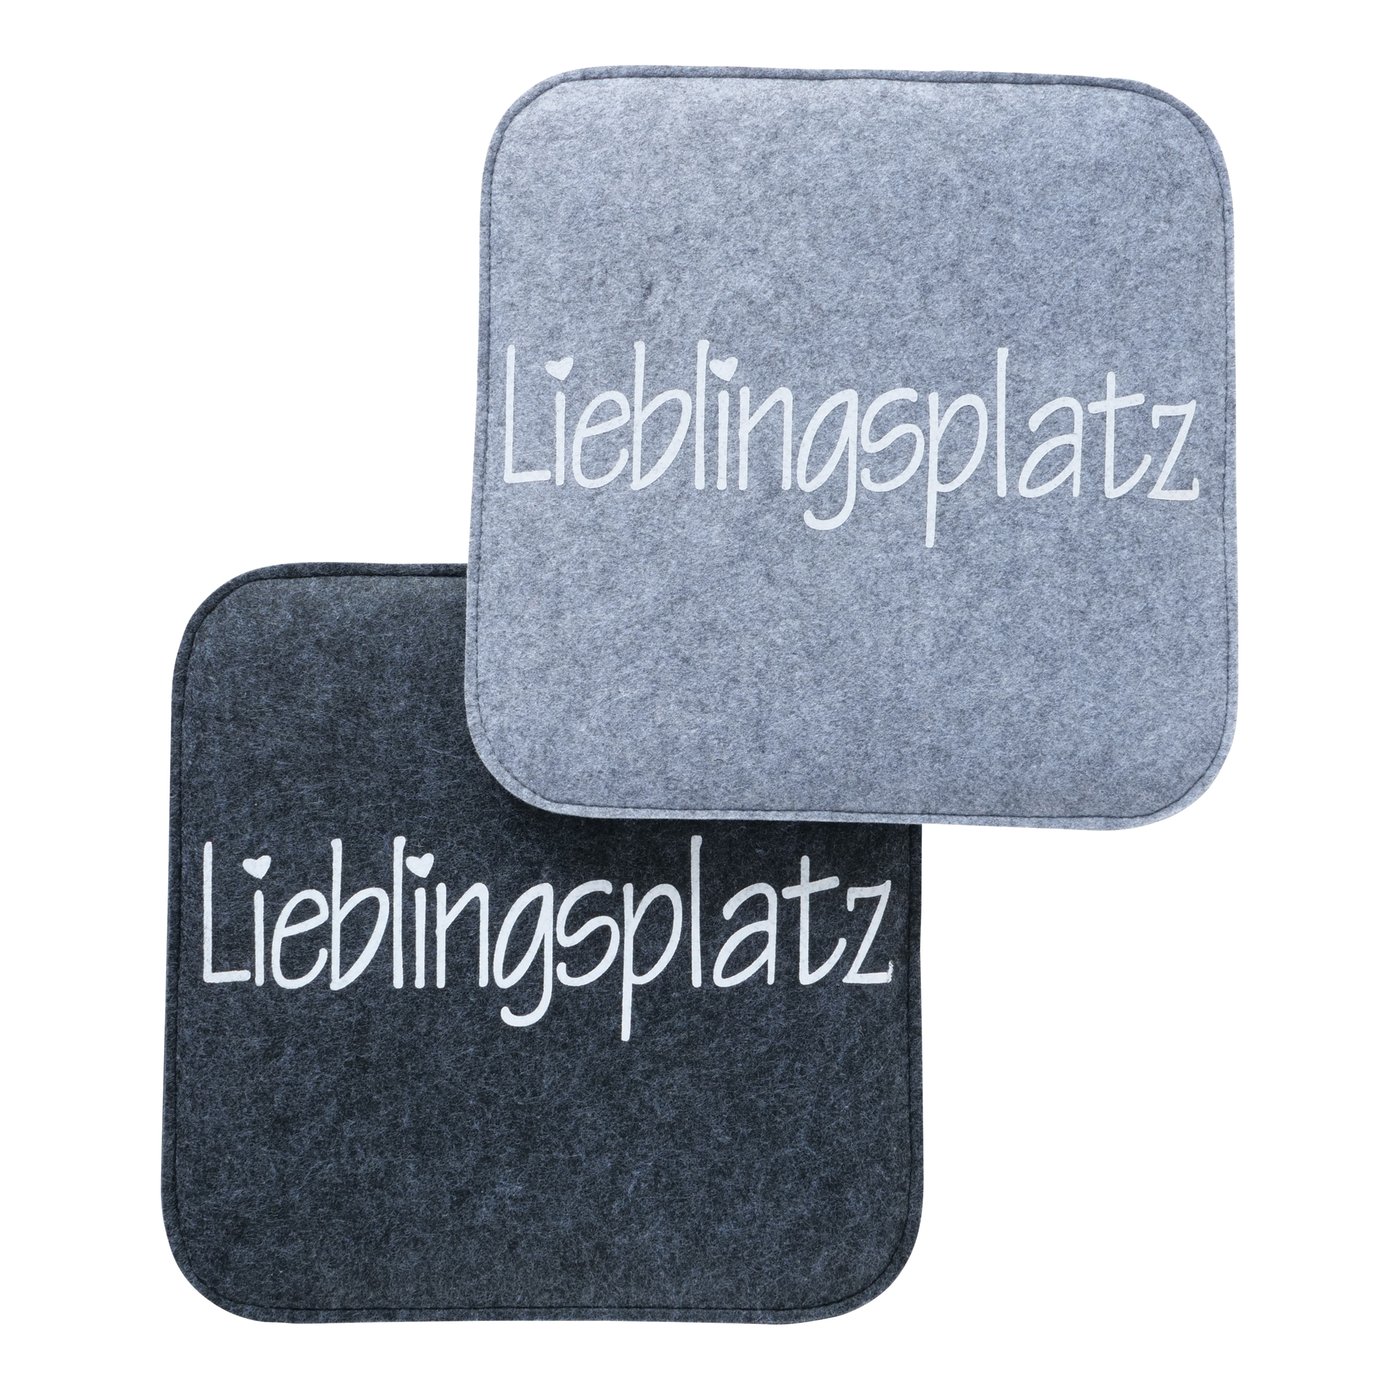 Filz Sitzkissen Stuhlkissen "Lieblingsplatz" grau, anthrazit schwarz, 2006223, 4020607808928